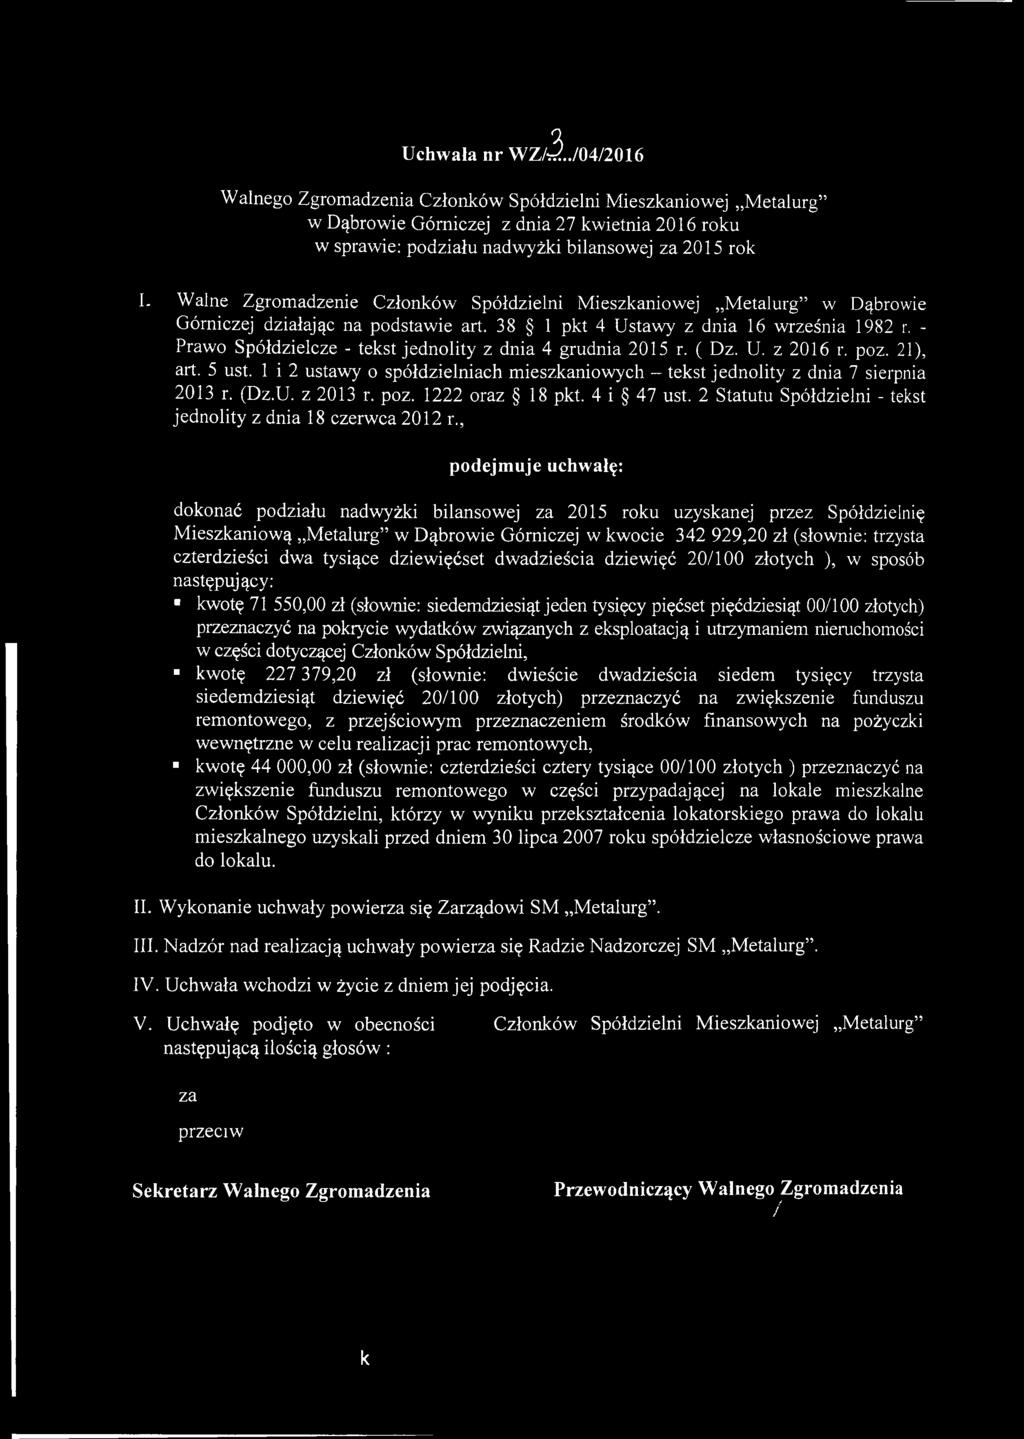 2 Statutu Spółdzielni - tekst jednolity z dnia 18 czerwca 2012 r.